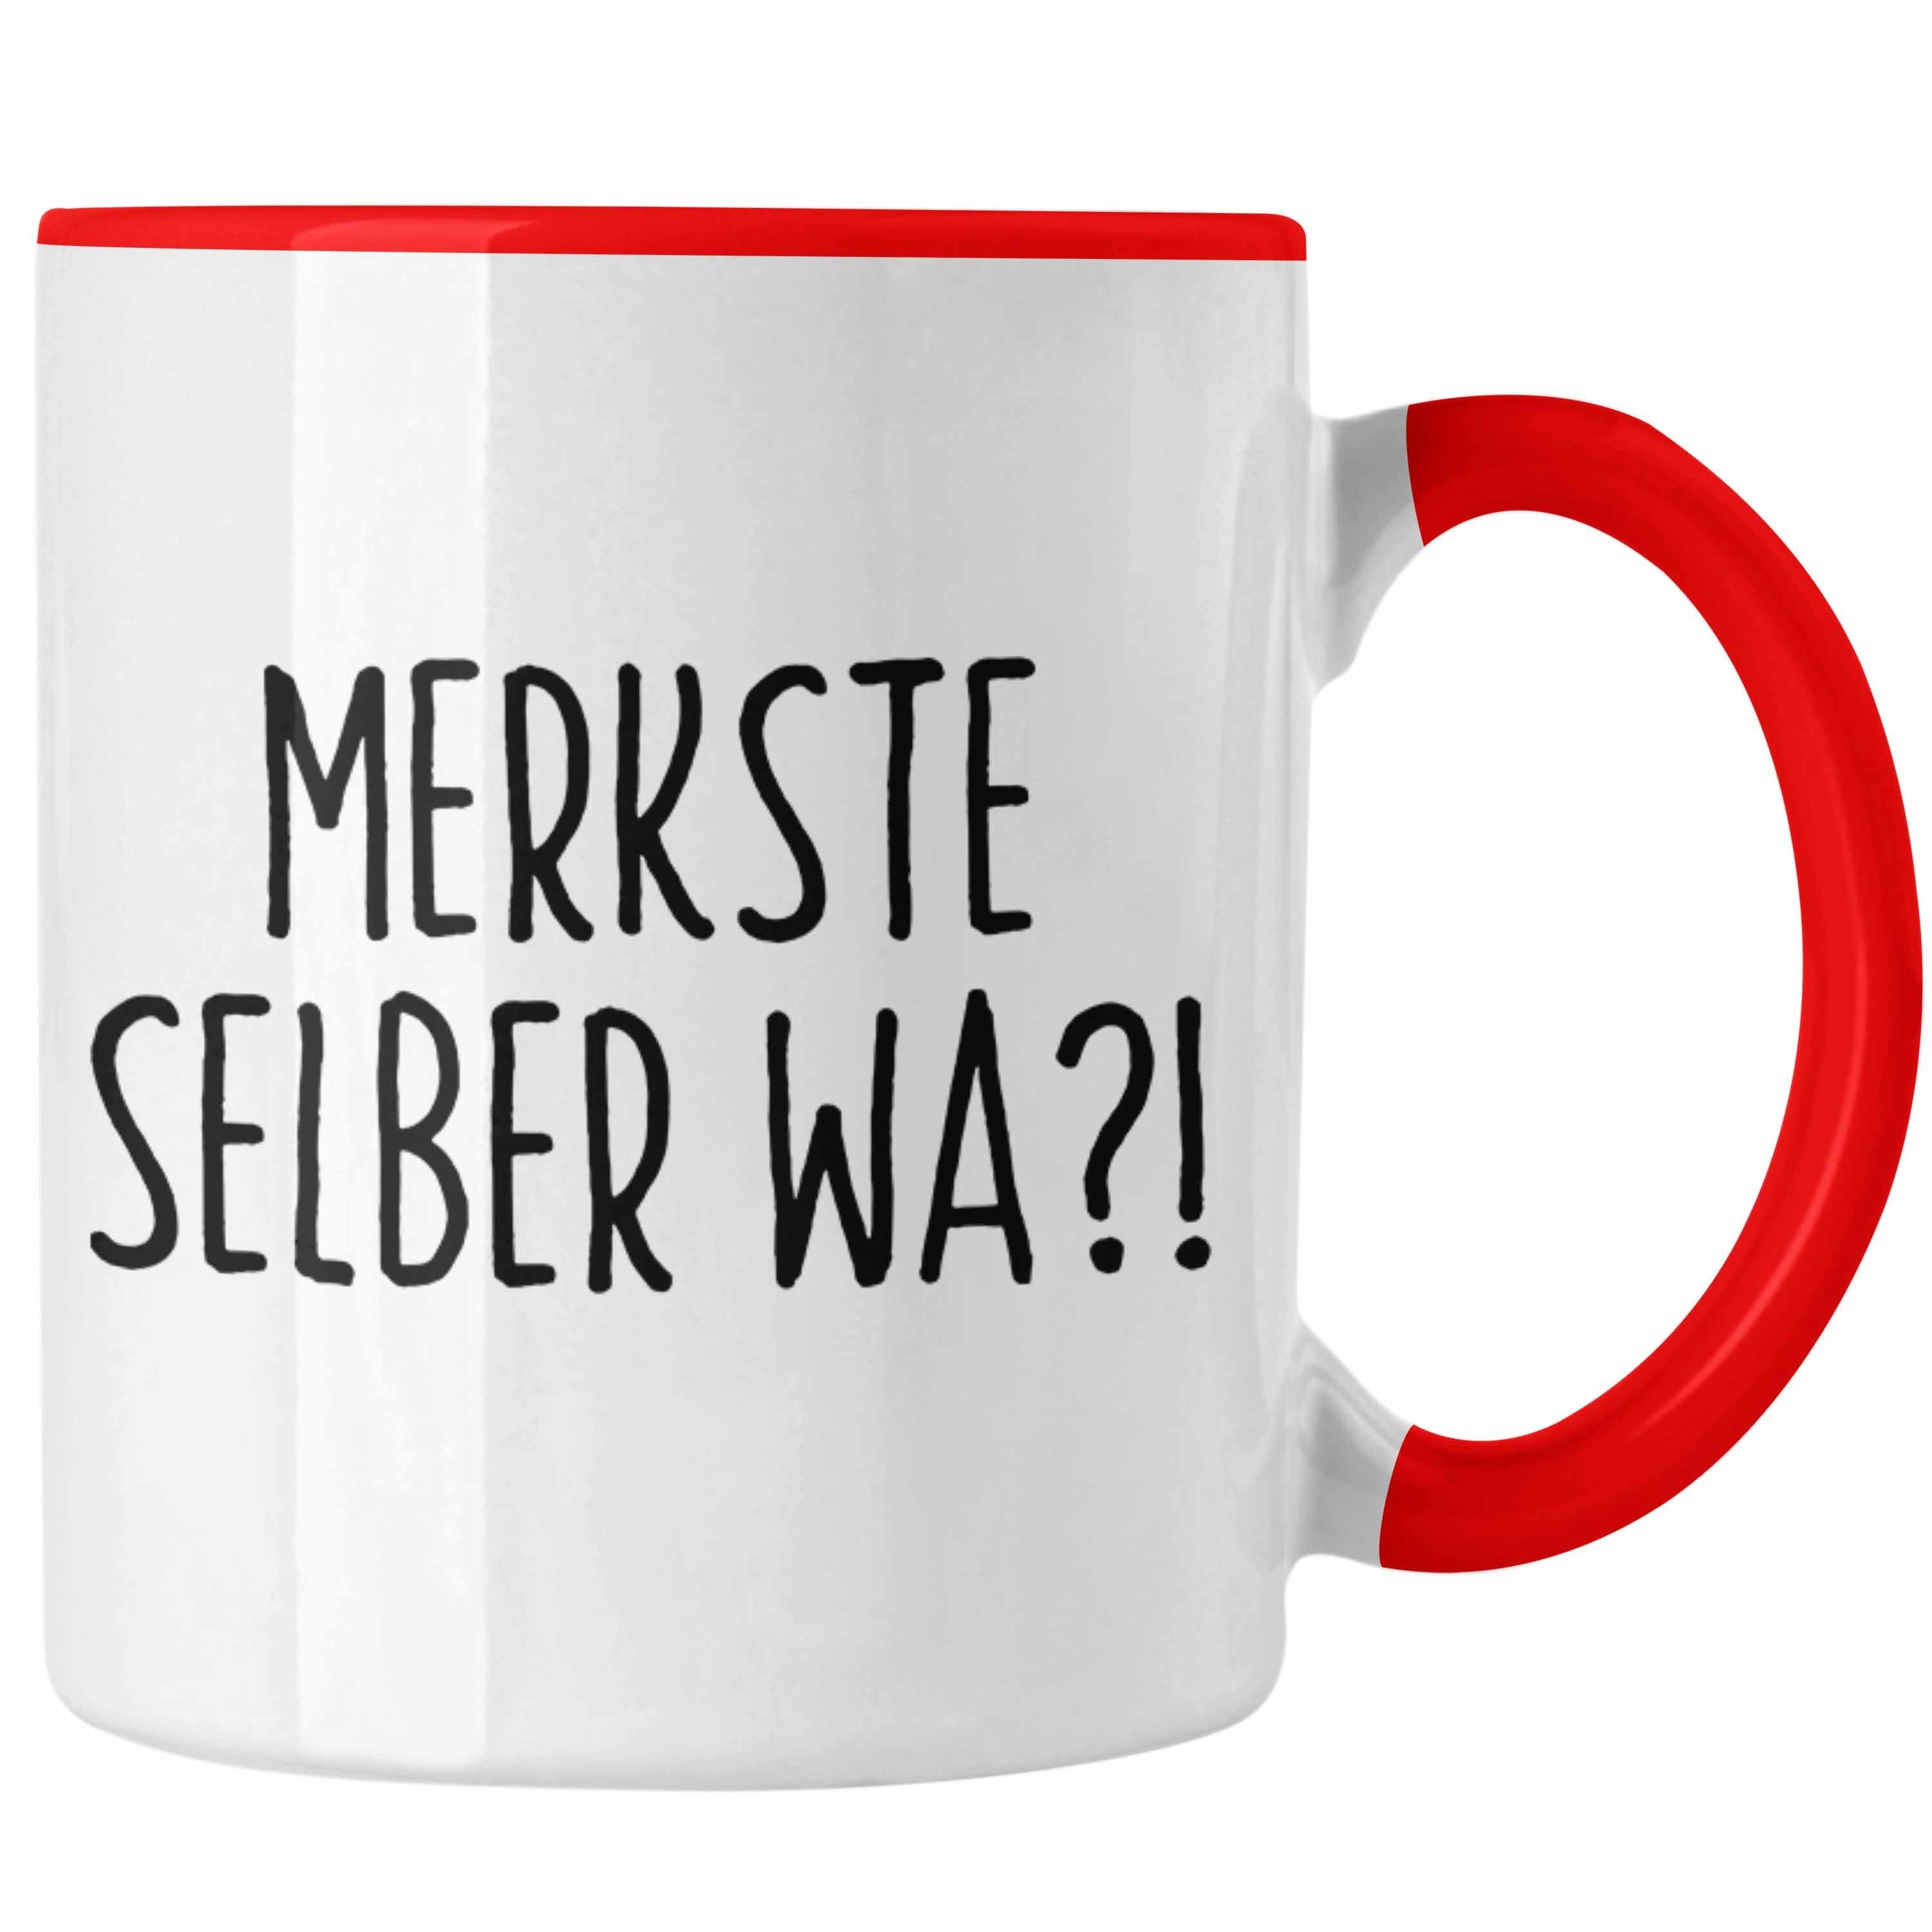 Trendation Tasse Merkste Selber Wa Tasse Geschenk Kaffeebecher mit Spruch Büro Humor Rot